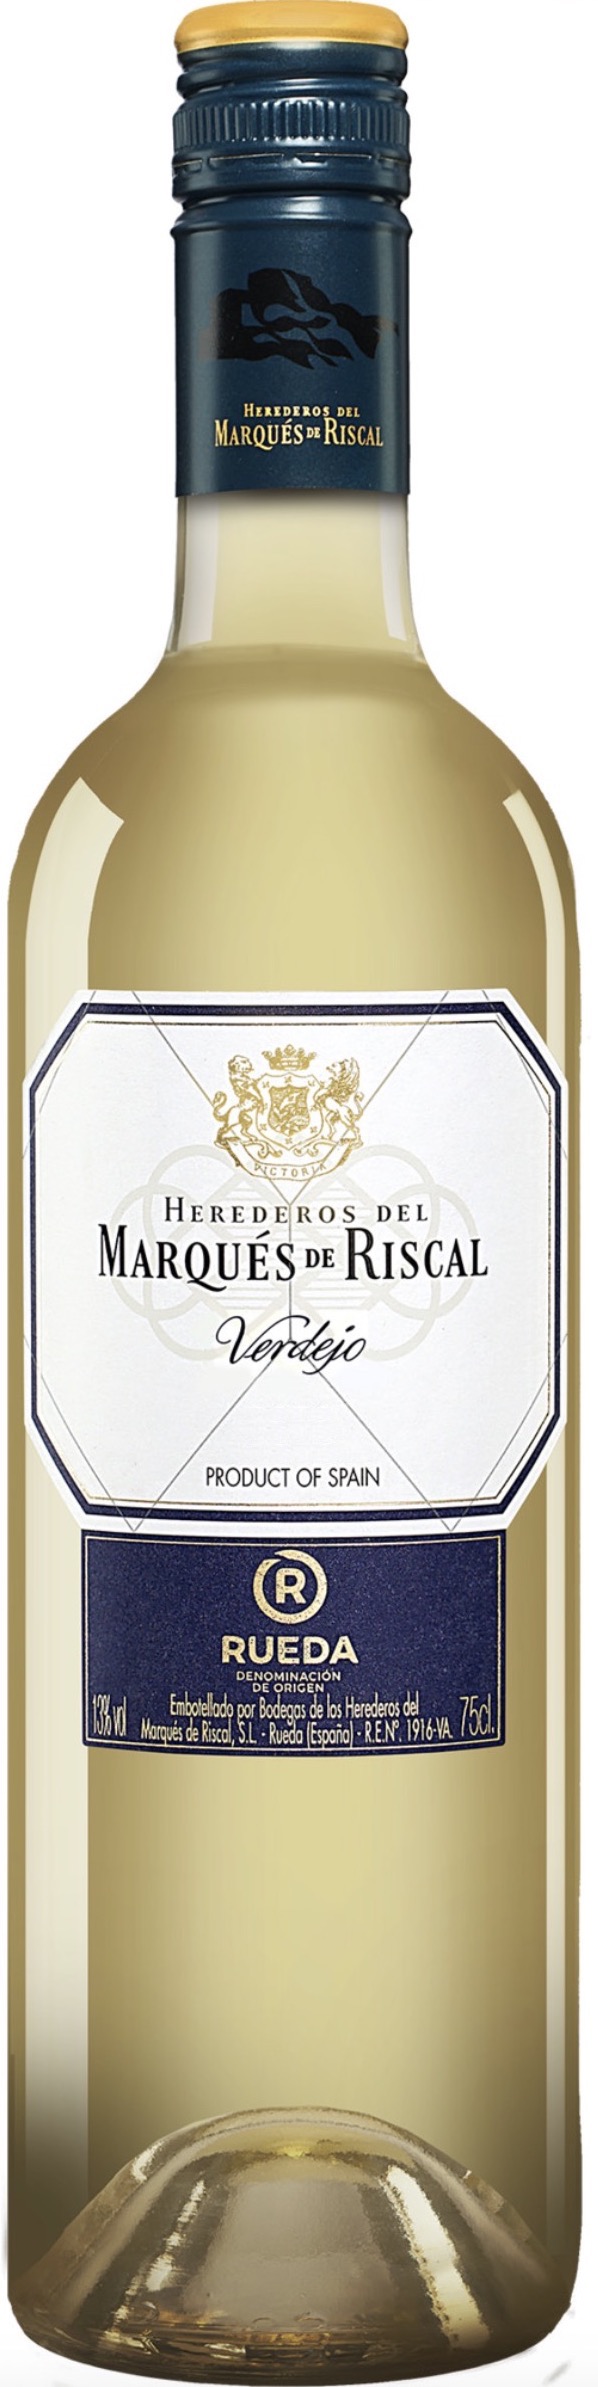 Marqués de Riscal Blanco Rueda 13% vol. 0,75L